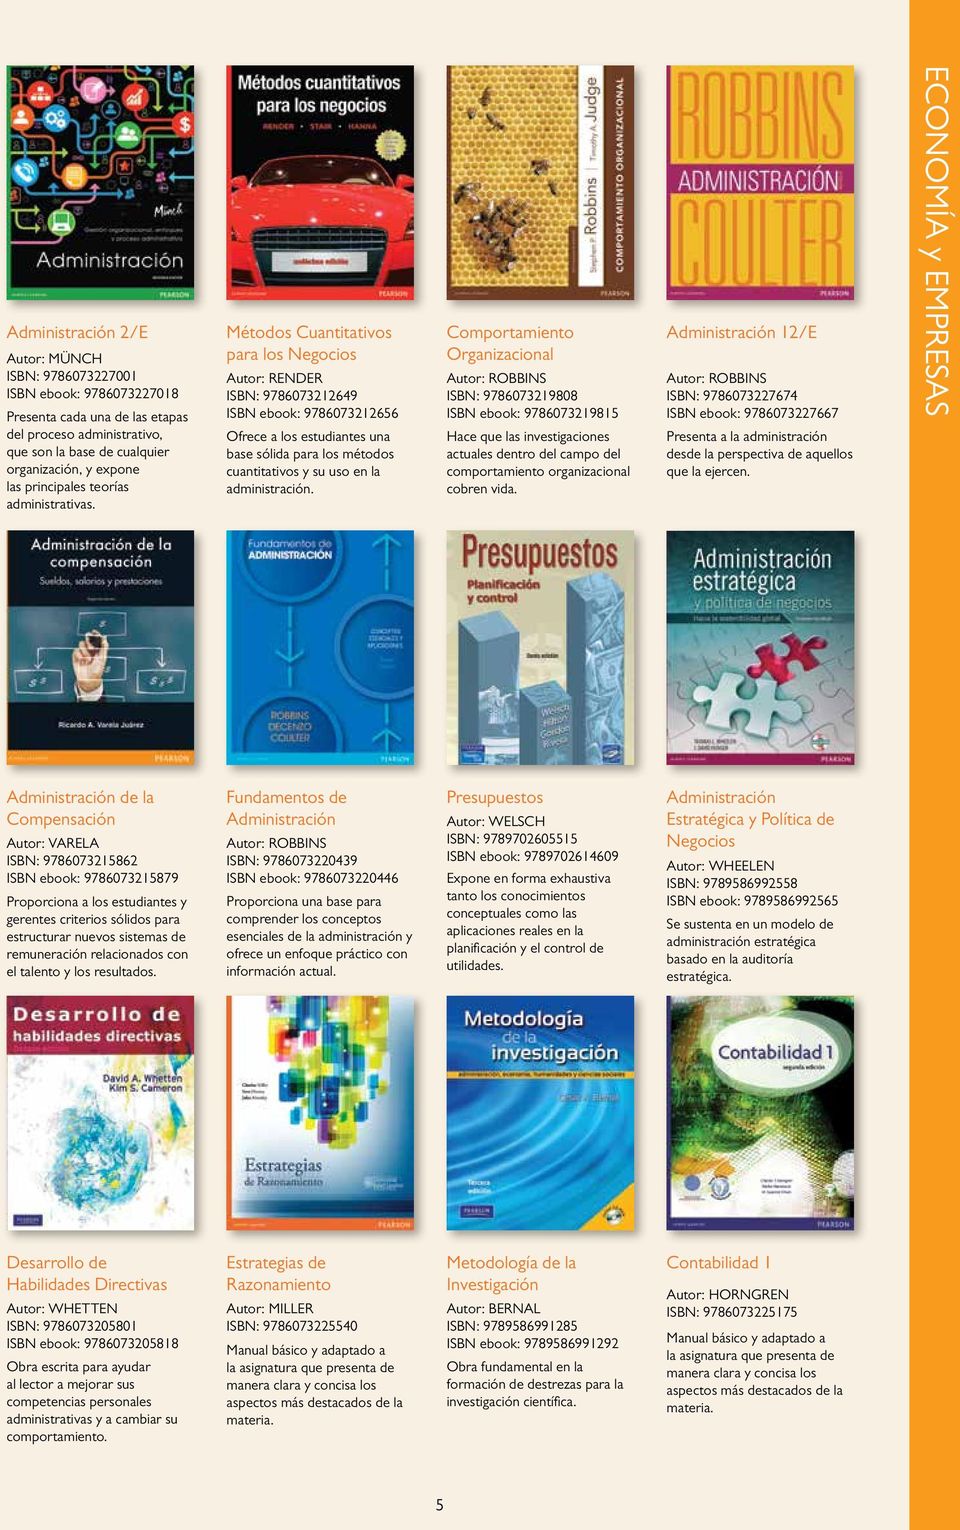 Métodos Cuantitativos para los Negocios Autor: RENDER ISBN: 9786073212649 ISBN ebook: 9786073212656 Ofrece a los estudiantes una base sólida para los métodos cuantitativos y su uso en la